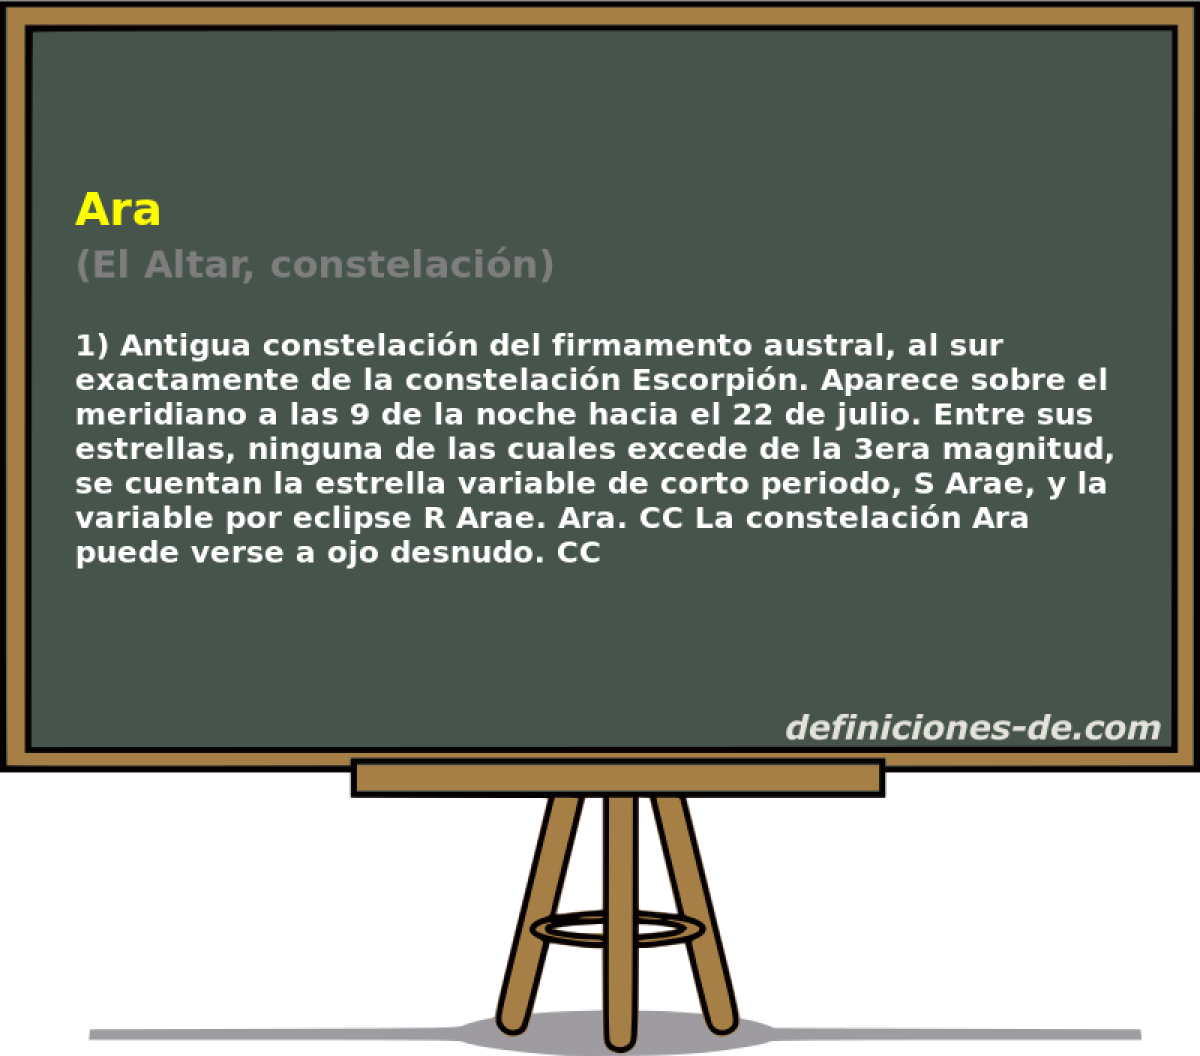 Ara (El Altar, constelacin)